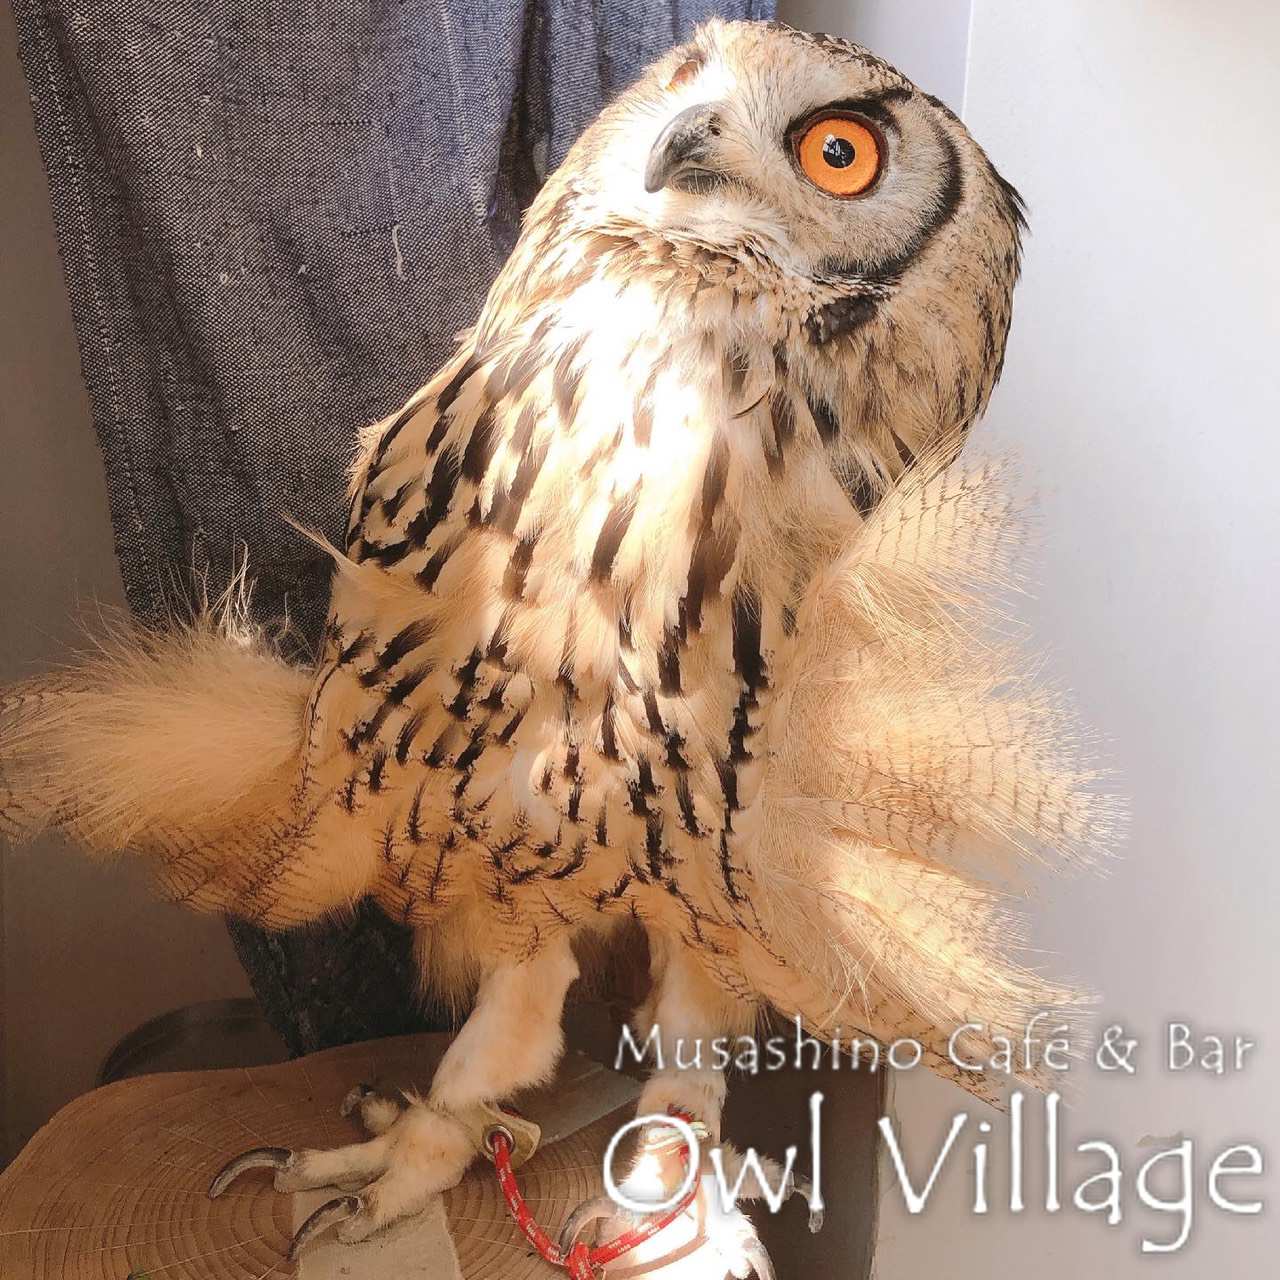 owl cafe harajuku down load free photo 0317 Indian Eagle Owl